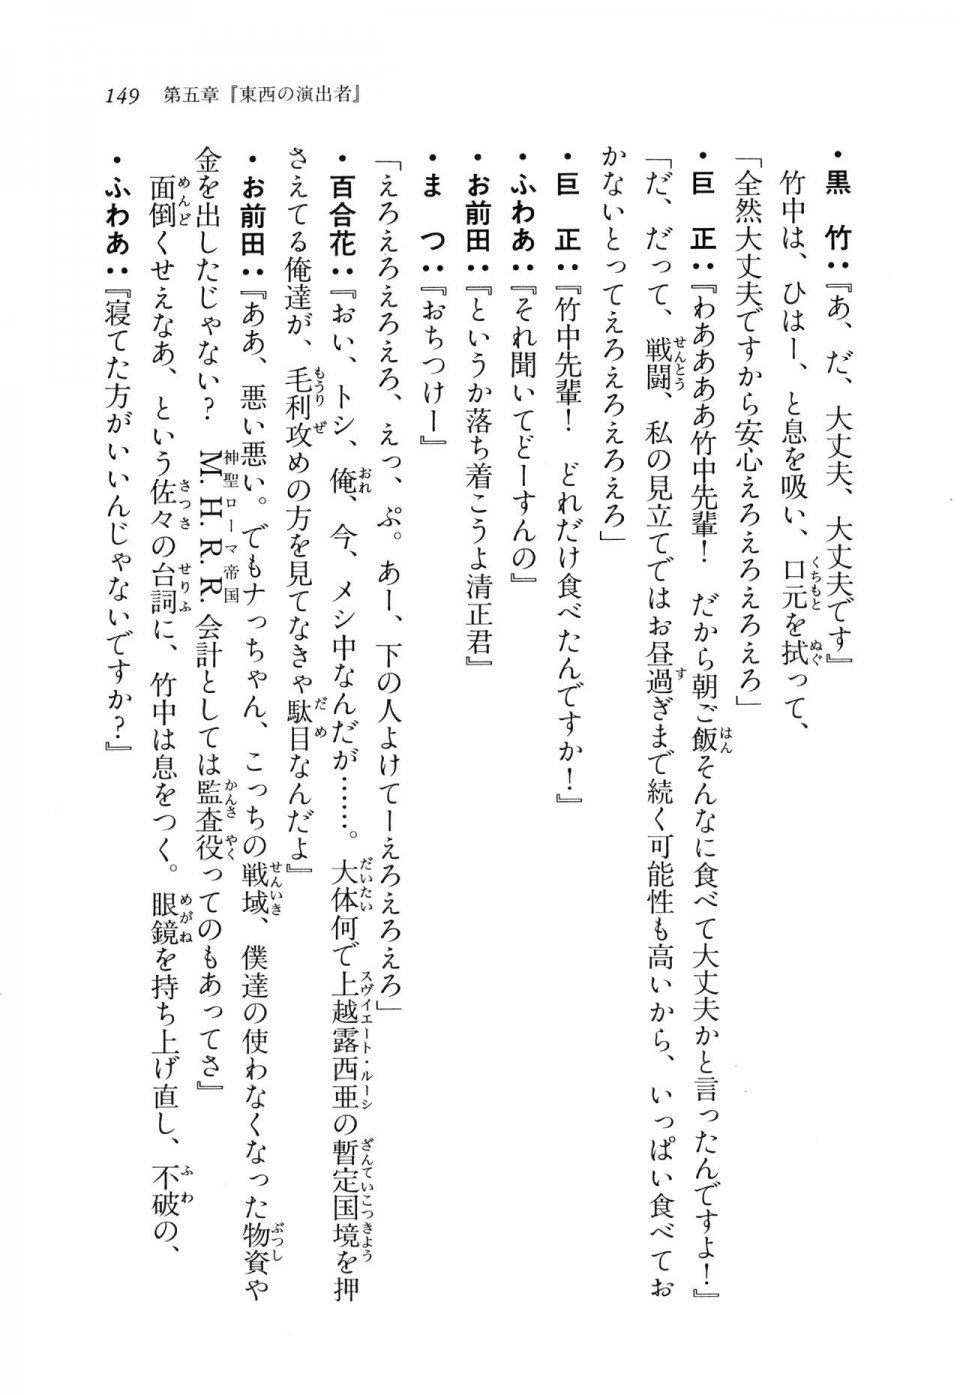 Kyoukai Senjou no Horizon LN Vol 11(5A) - Photo #149